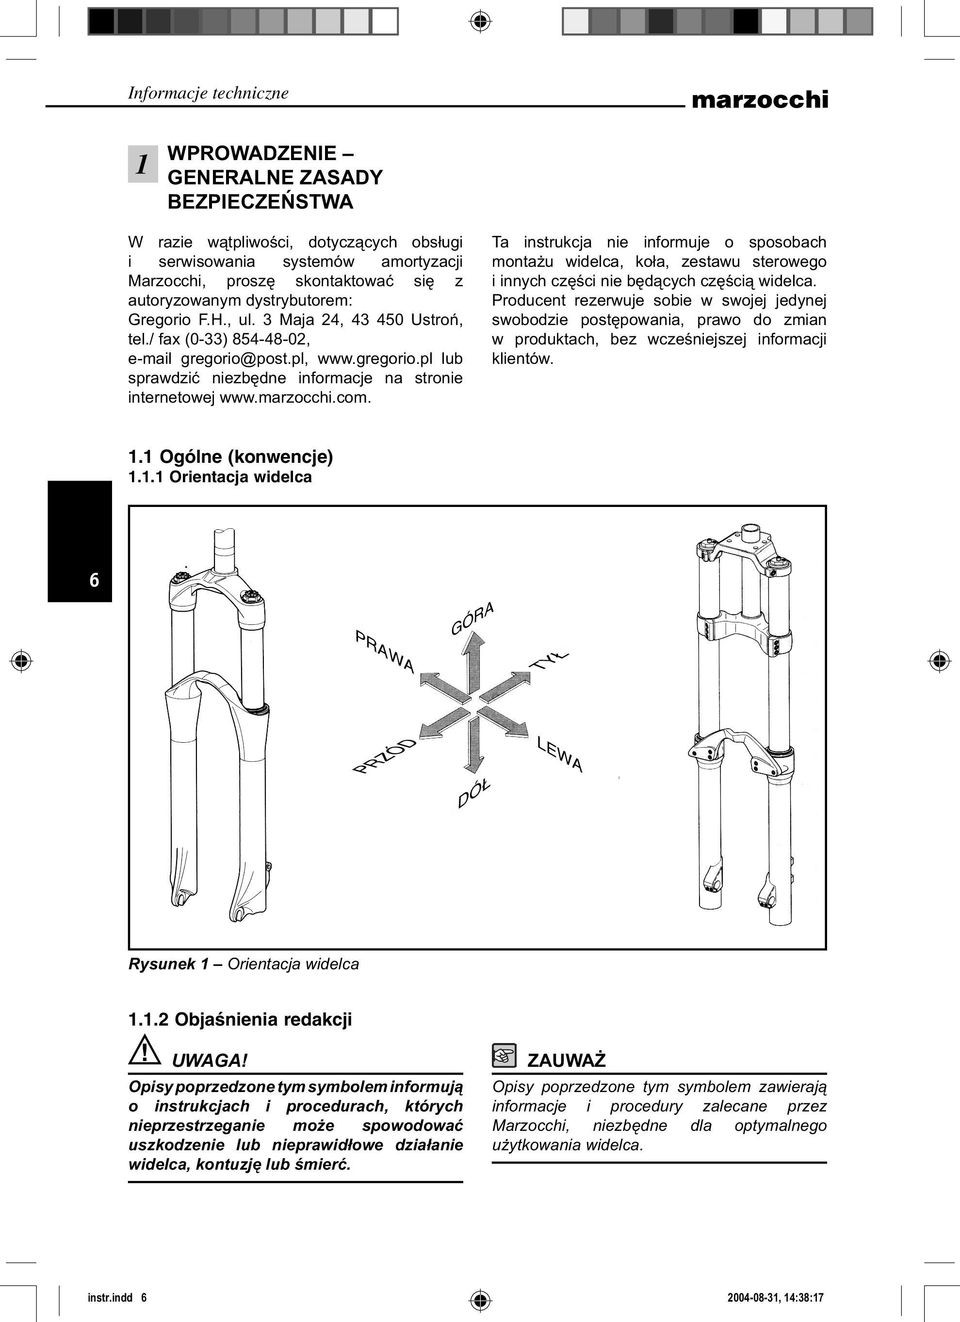 marzocchi.com. Ta instrukcja nie informuje o sposobach montażu widelca, koła, zestawu sterowego i innych części nie będących częścią widelca.